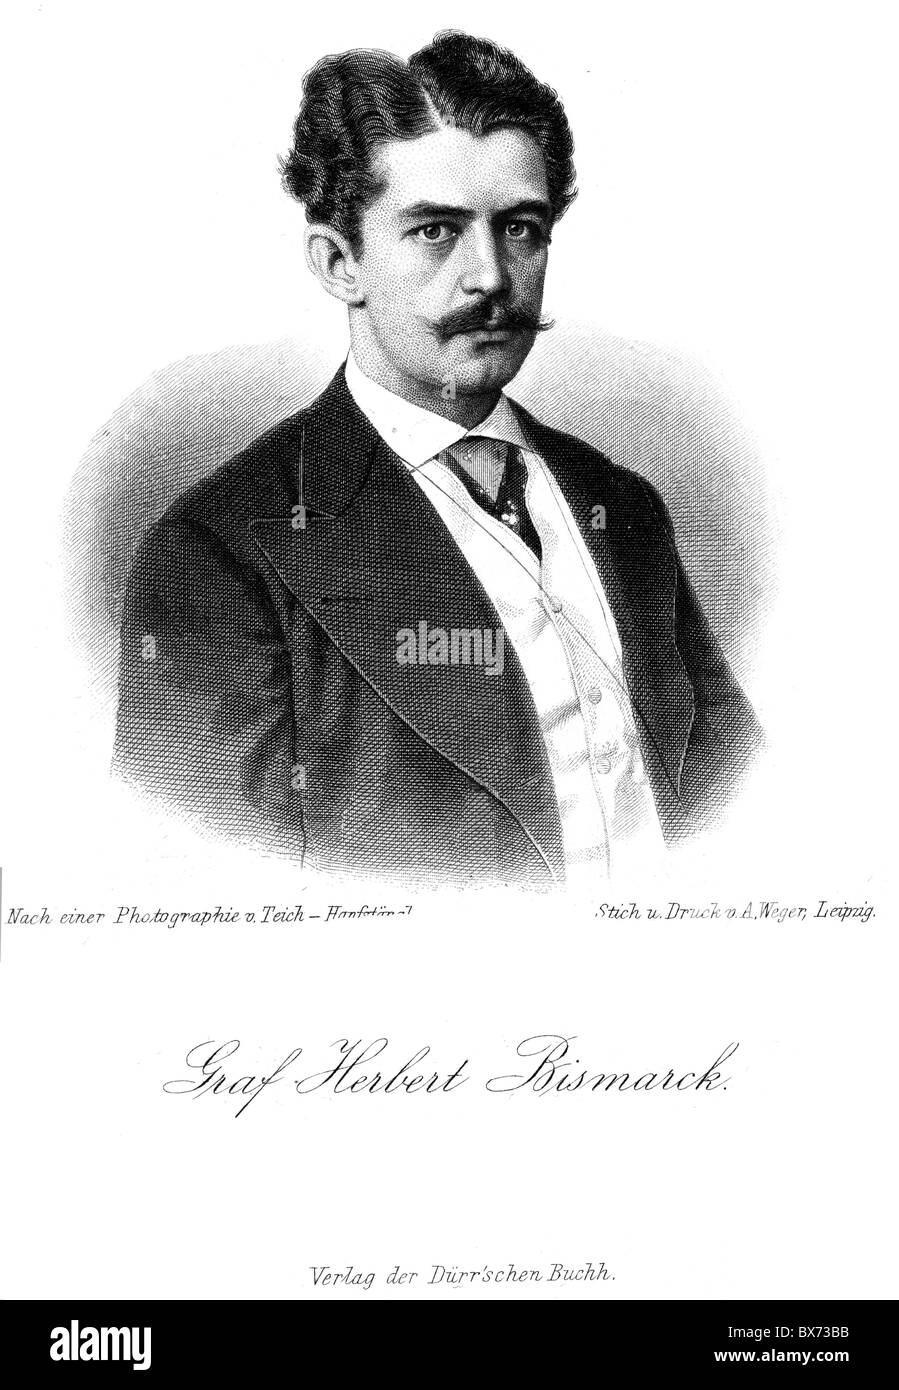 Bismarck, Herbert Prinz-von, 28.12.1849 - 18.9.1904, Deutscher Politiker, Porträt, Stahlstich, ca. 1875, Artist's Urheberrecht nicht gelöscht werden Stockfoto